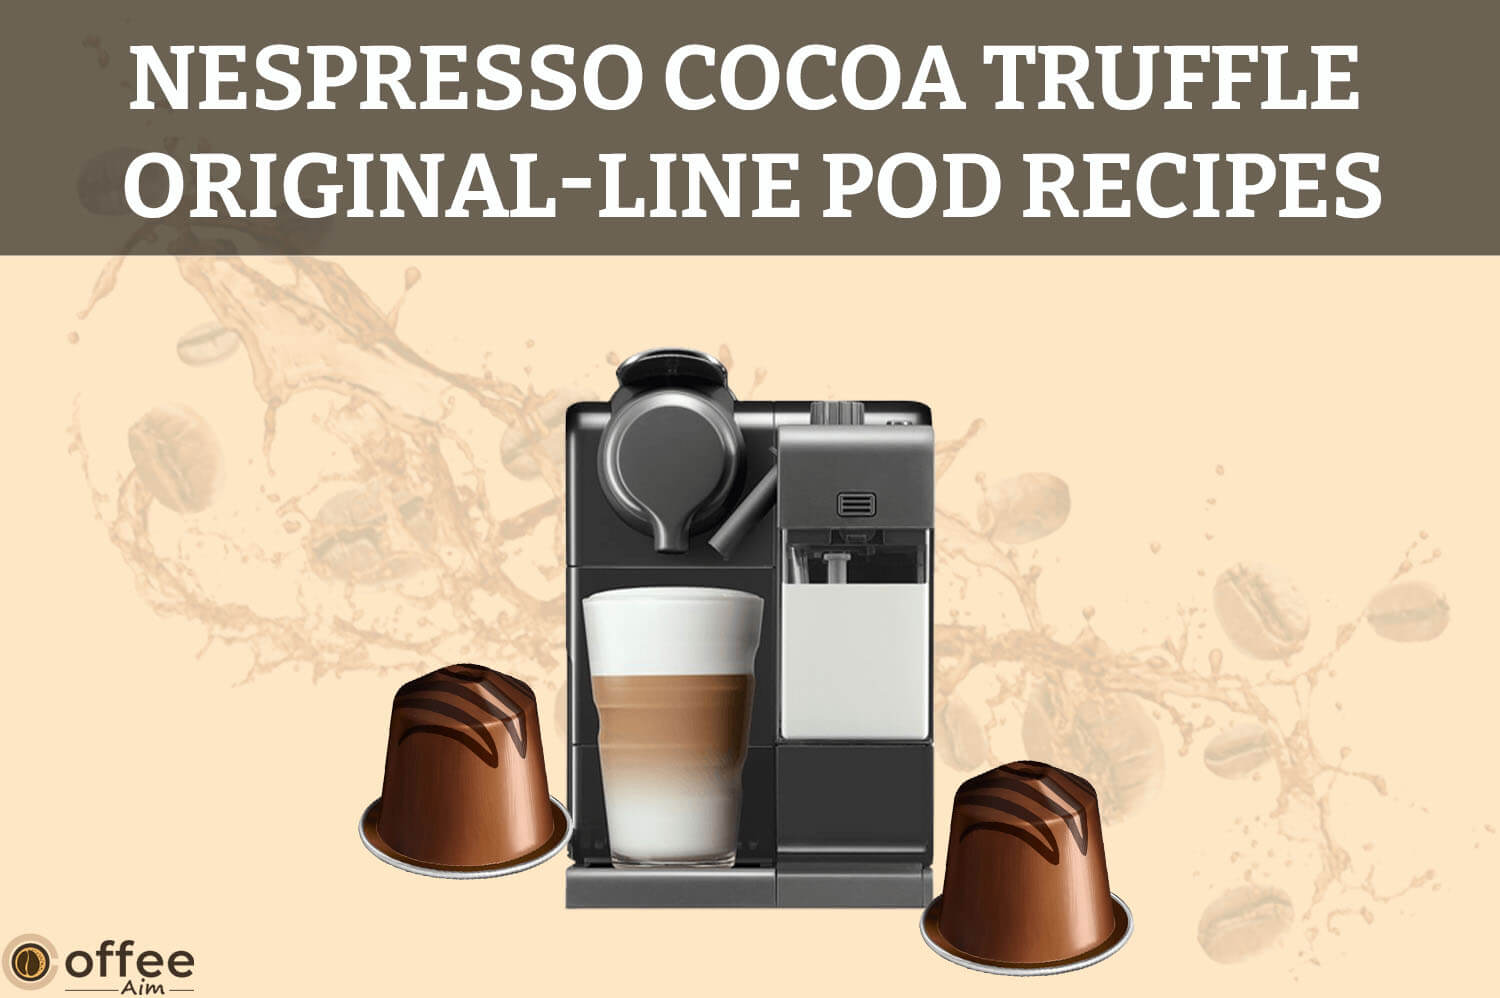 Featured image for the article "Nespresso Cocoa Truffle Original-Line Pod Recipes"